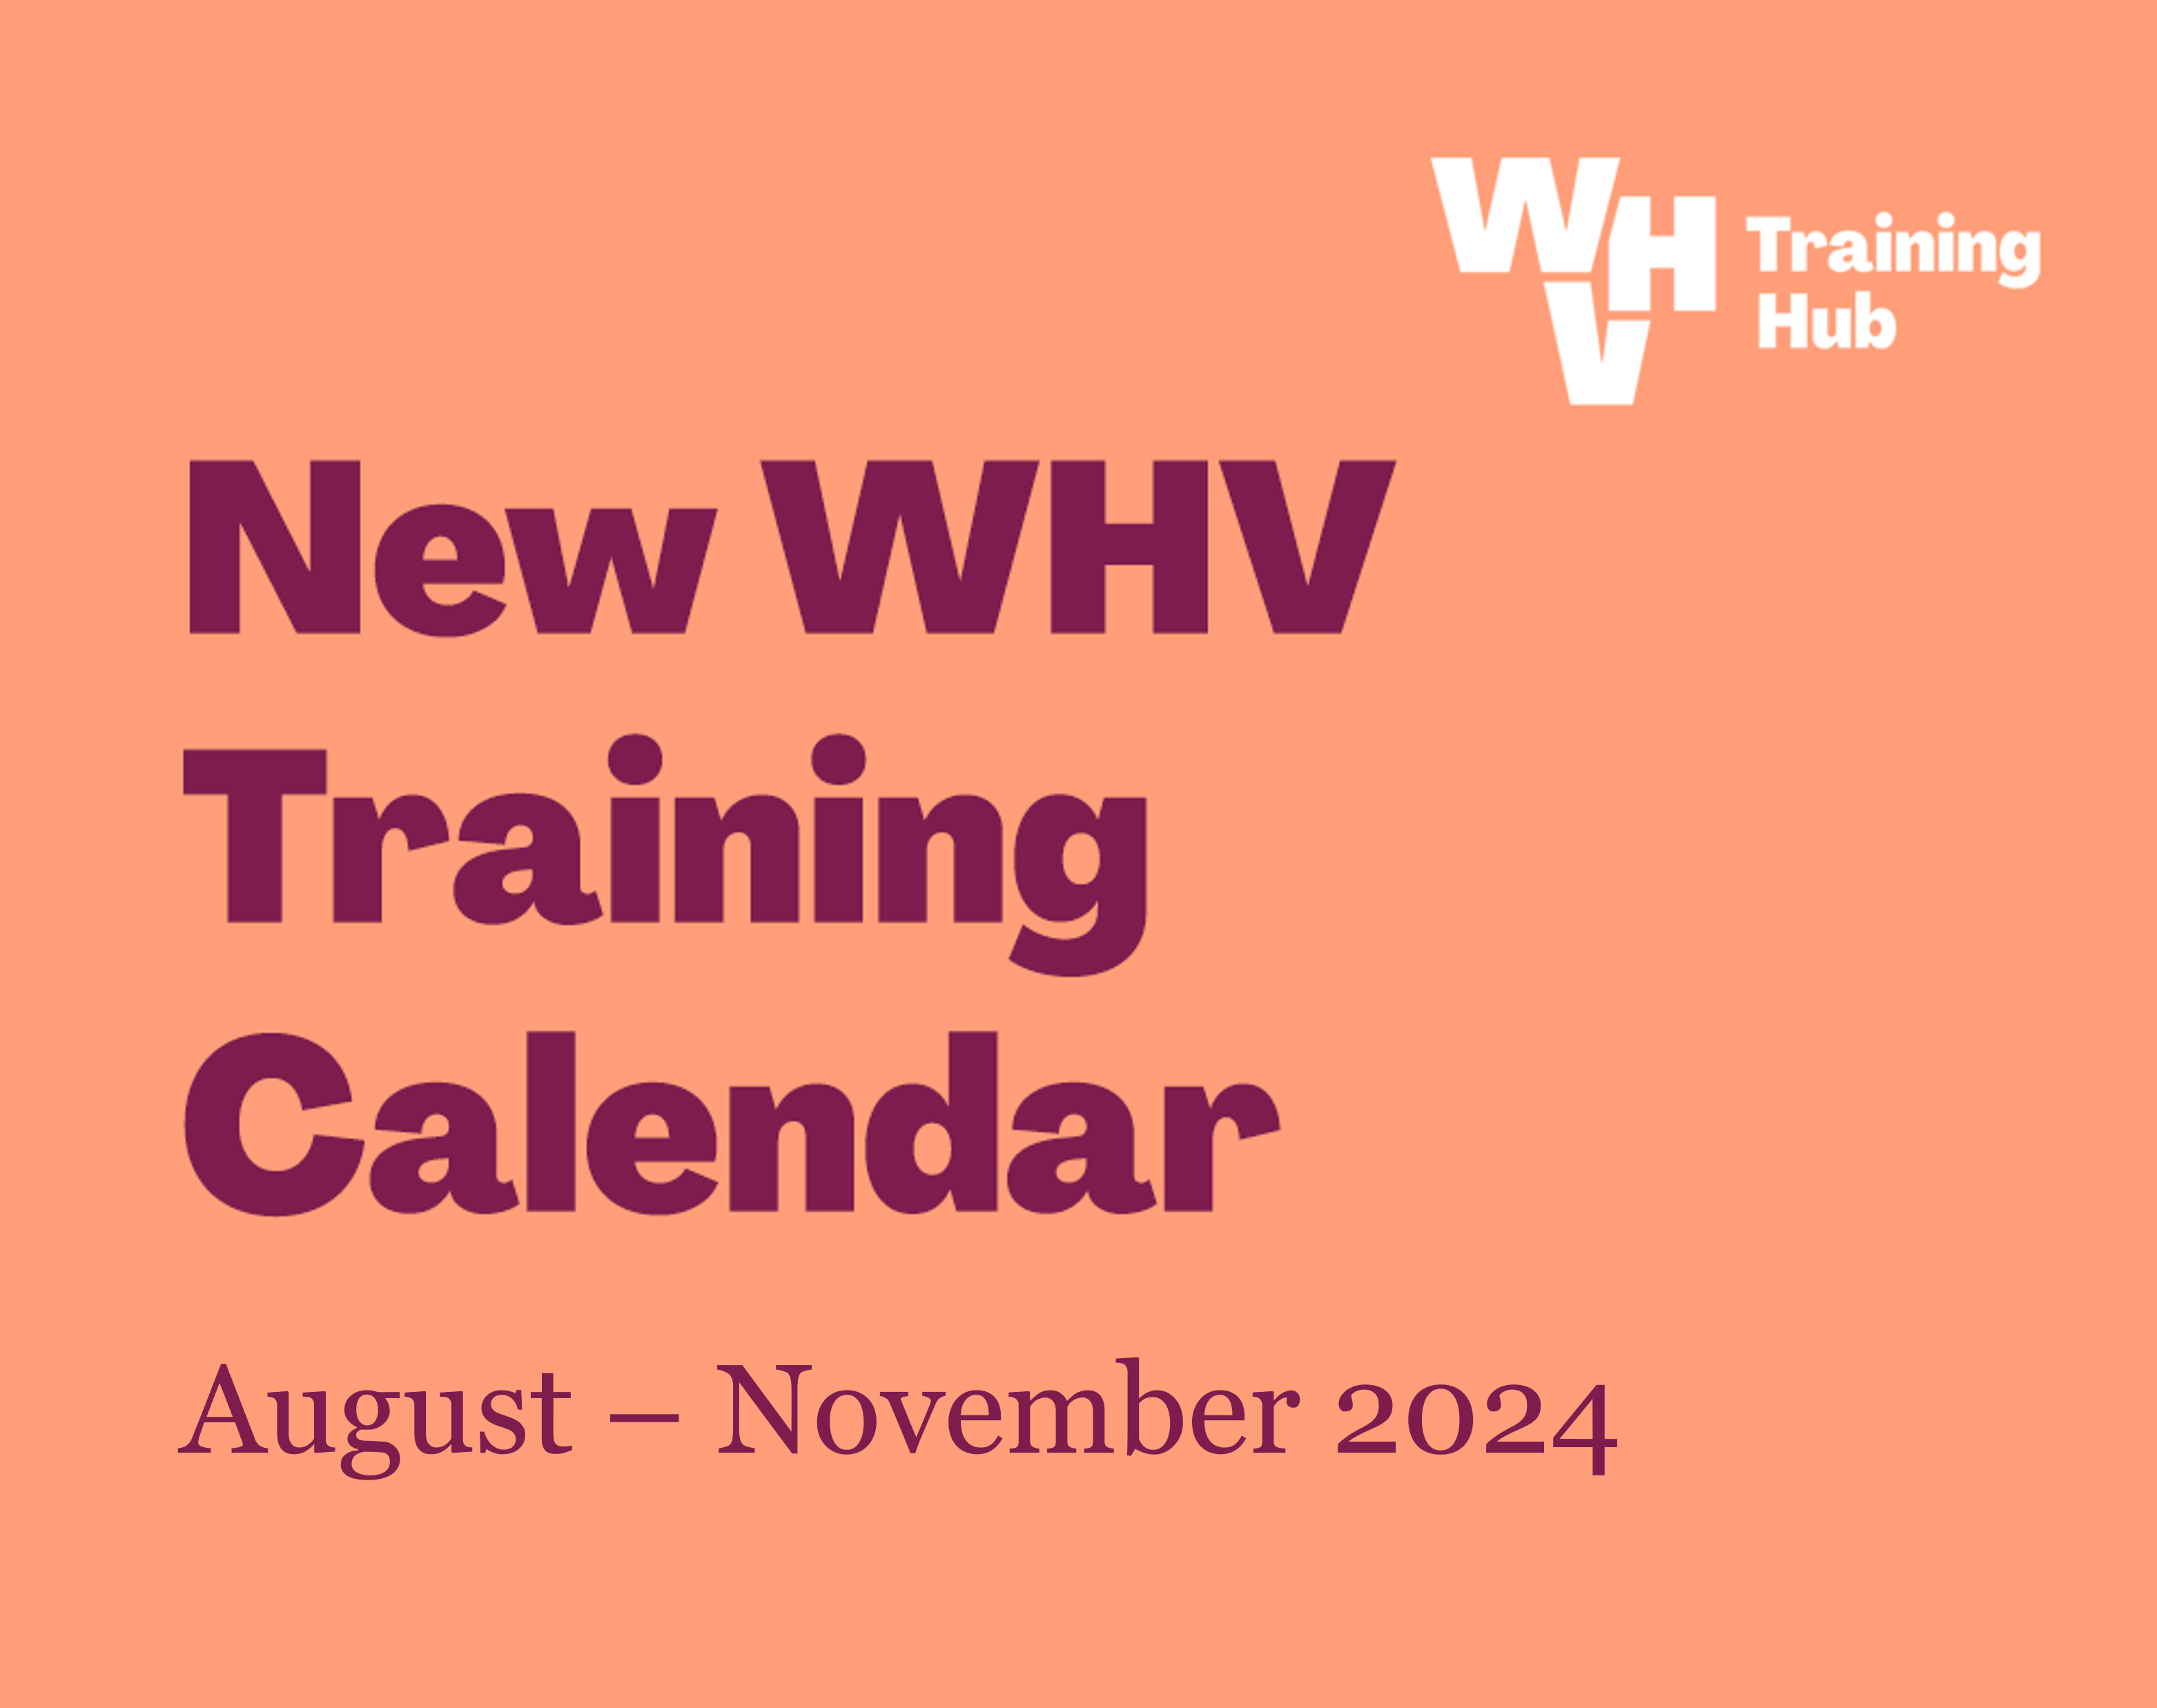 Training Calendar August to November 2024 carousel tile